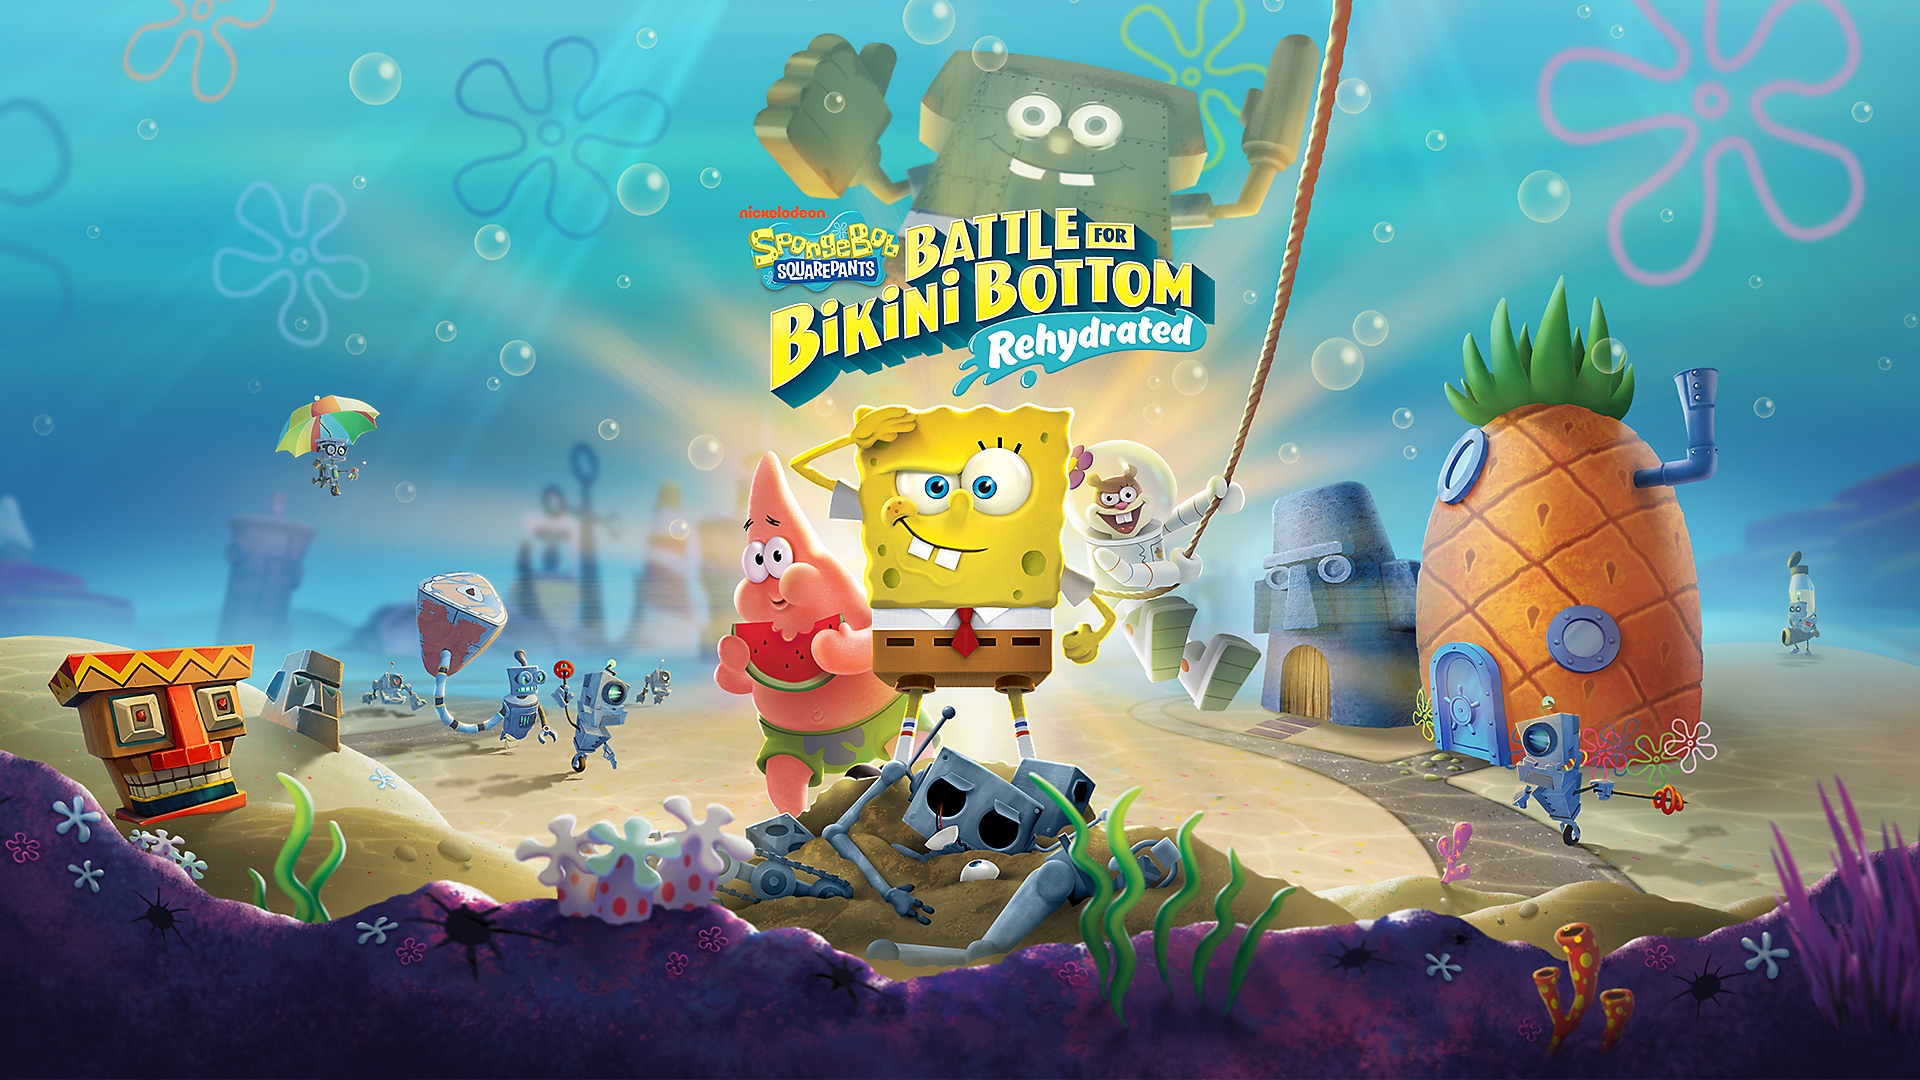 SpongeBob salutuje, zatímco Patrick jí ananas ve hře SpongeBob SquarePants: Battle for Bikini Bottom Rehydrated na PS4